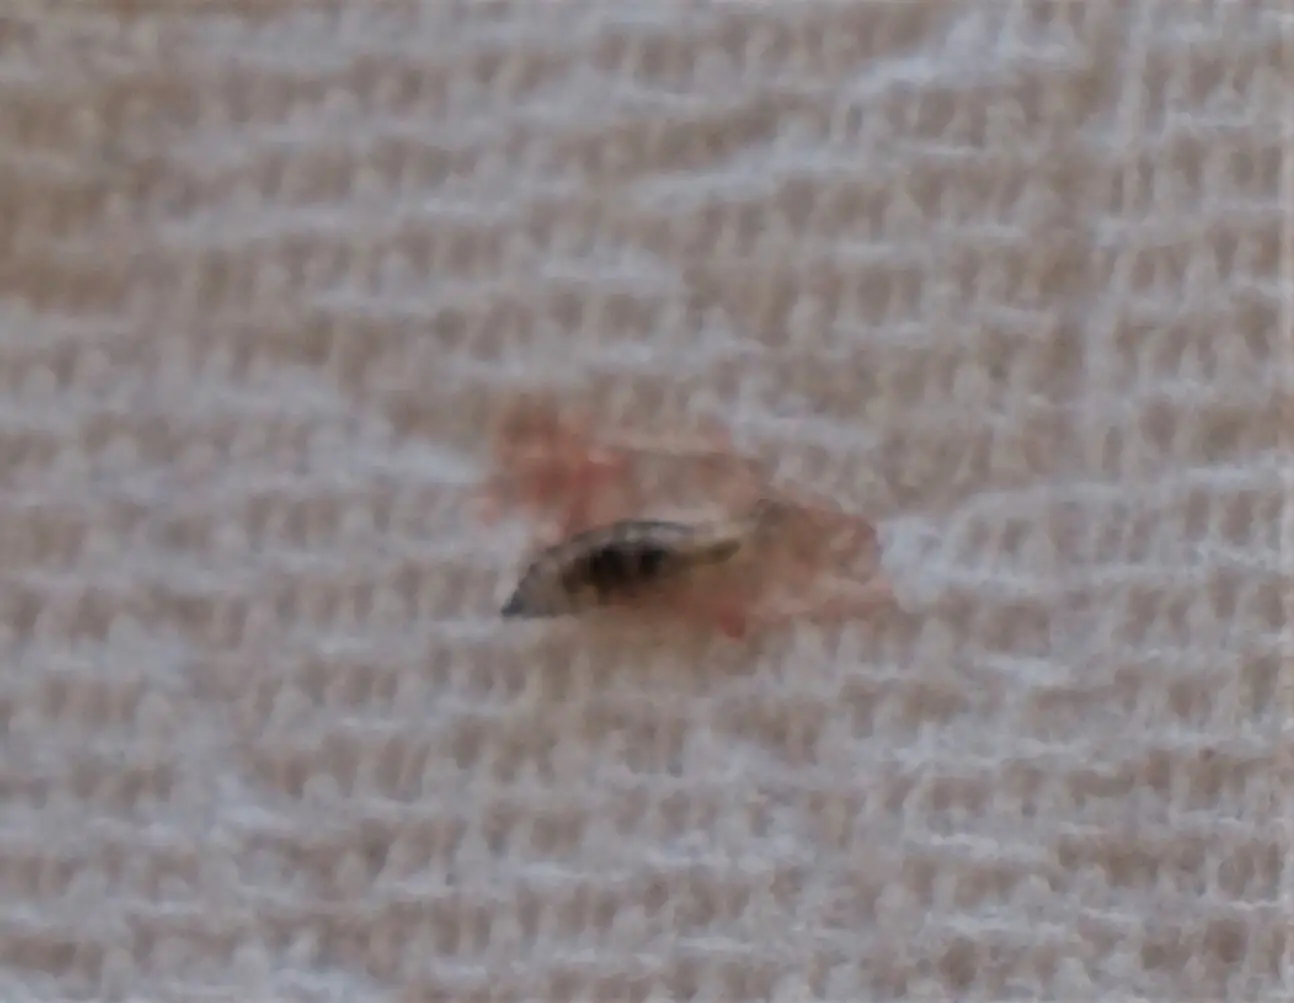 cuterebra in dogs actual little botfly larva / warble